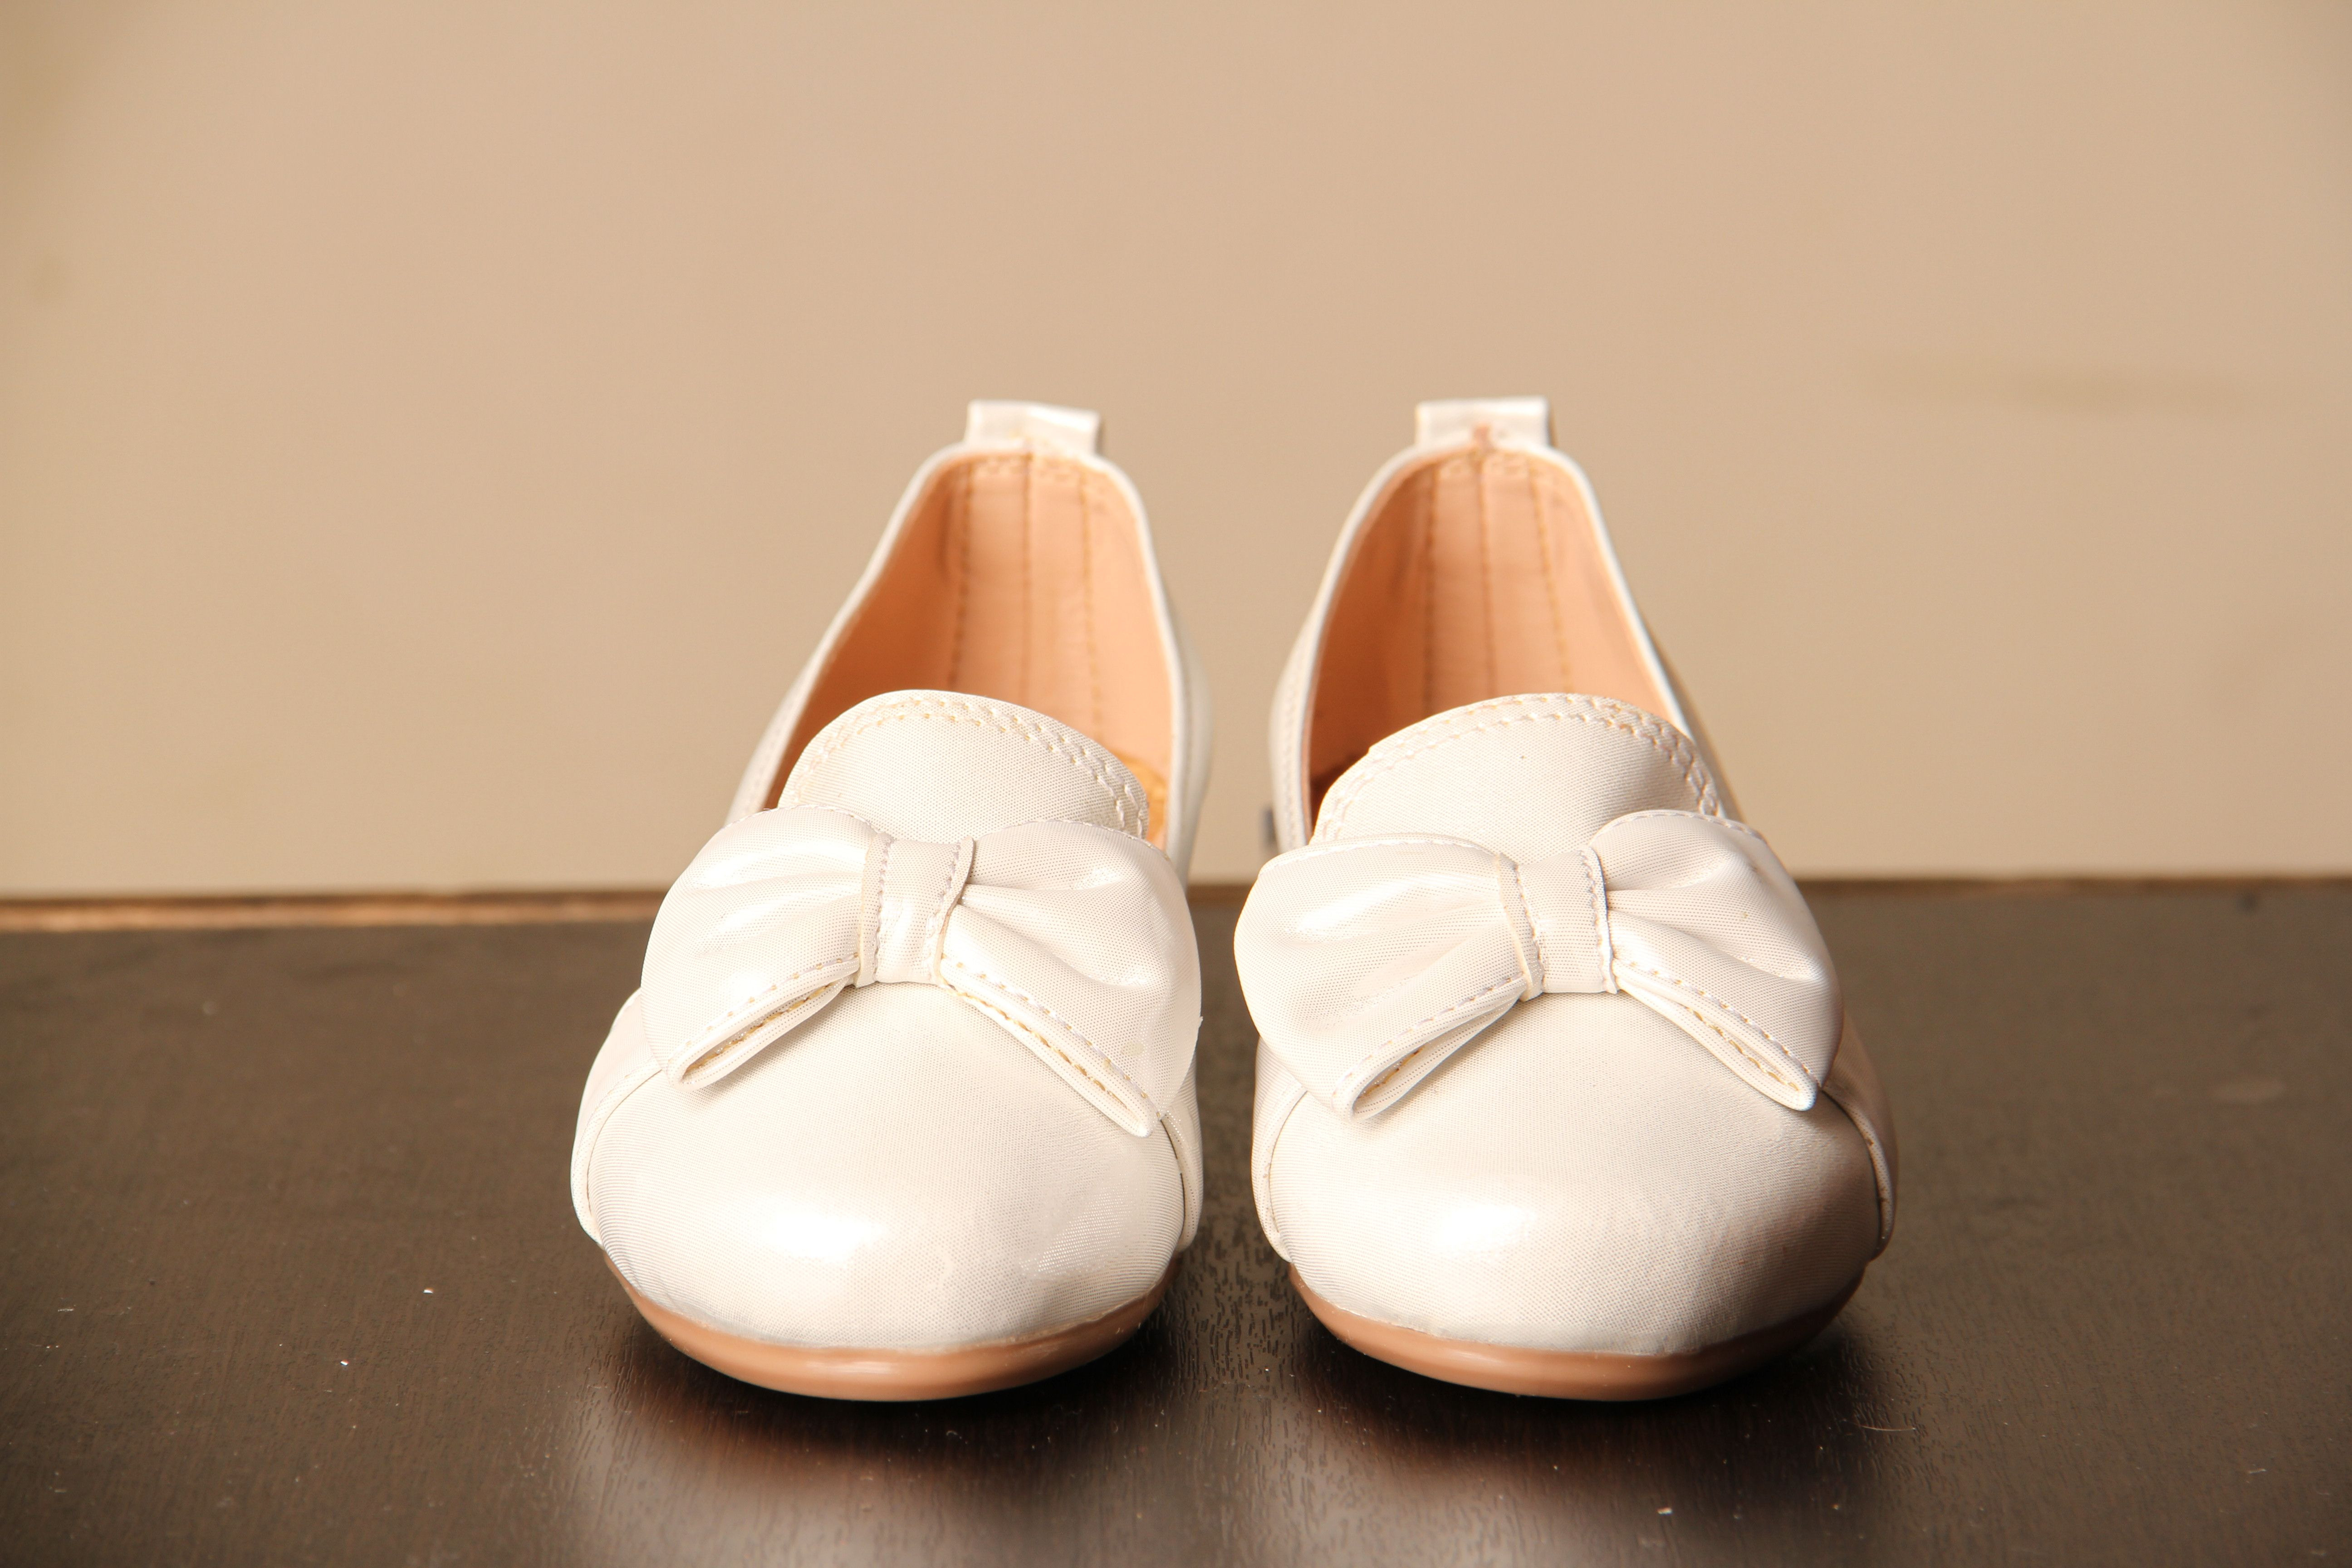 Baletas Blancas: Baletas Blancas shoes